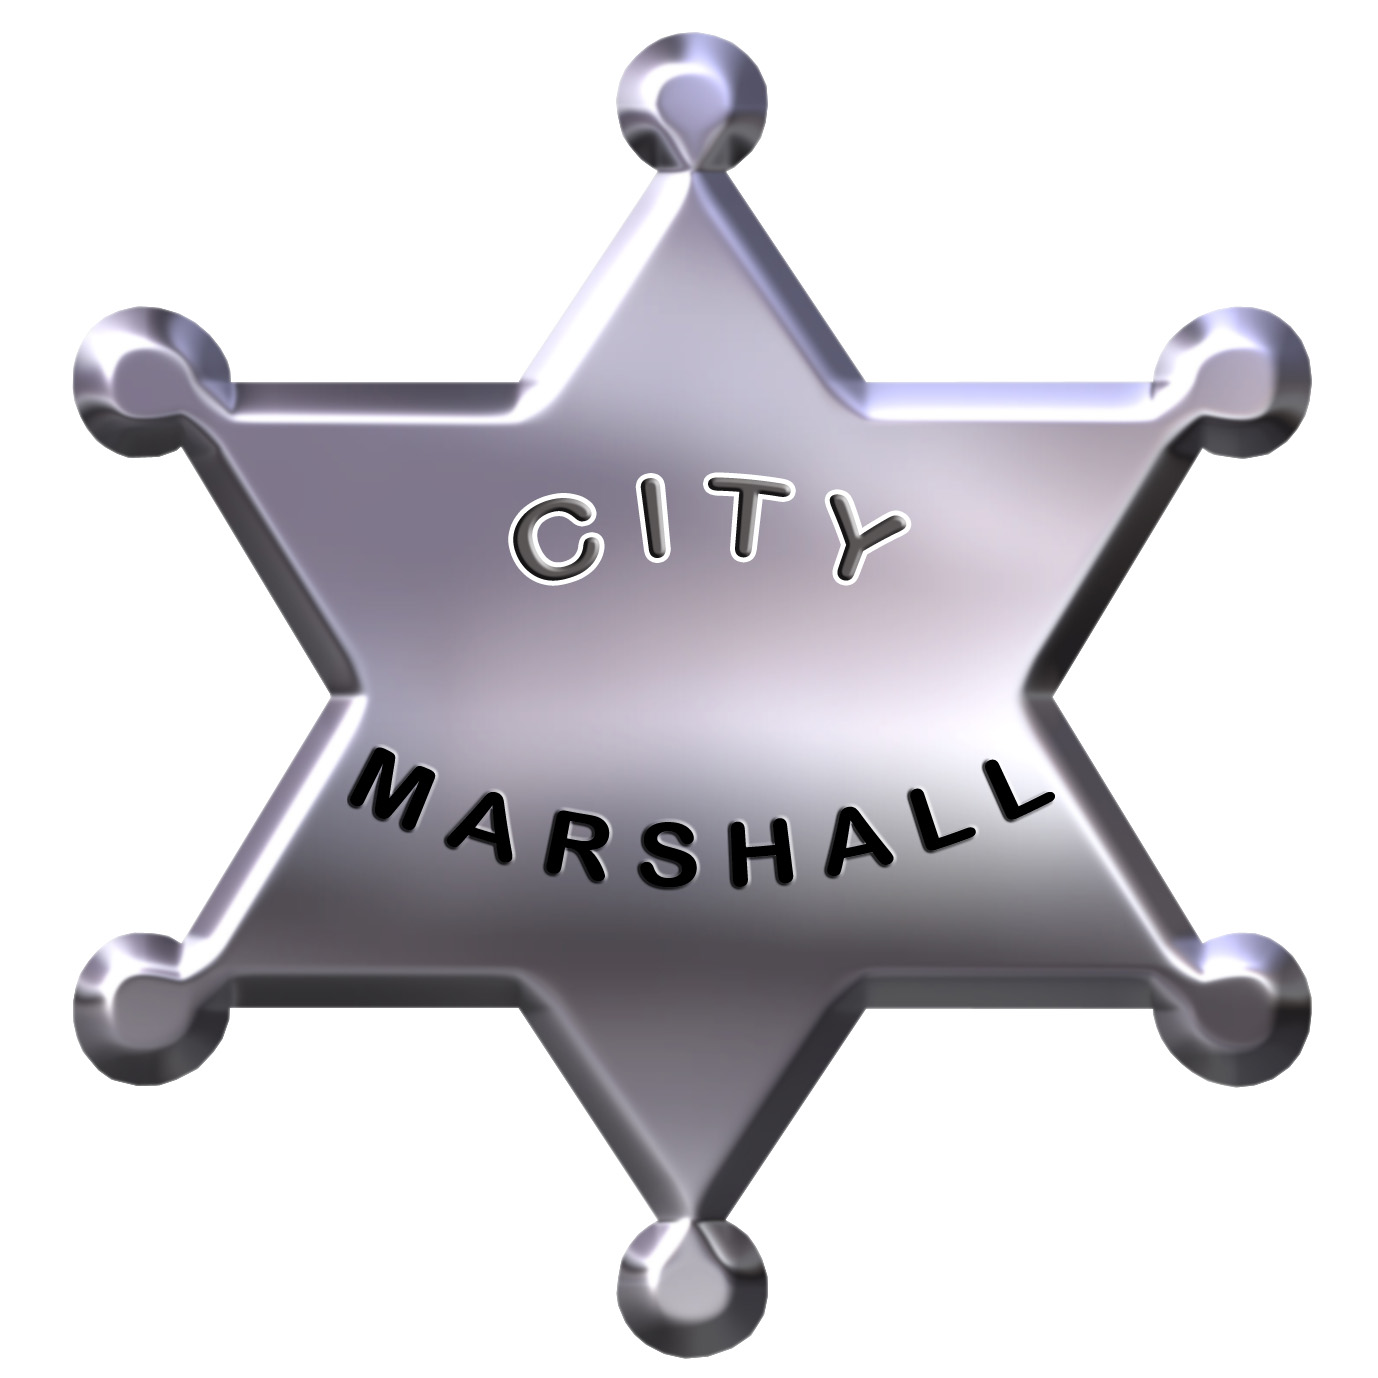 Logo of City Marshall Sports Massage Therapy Shiatsu Acupressure and Reflexology Massage Therapists In Cardiff